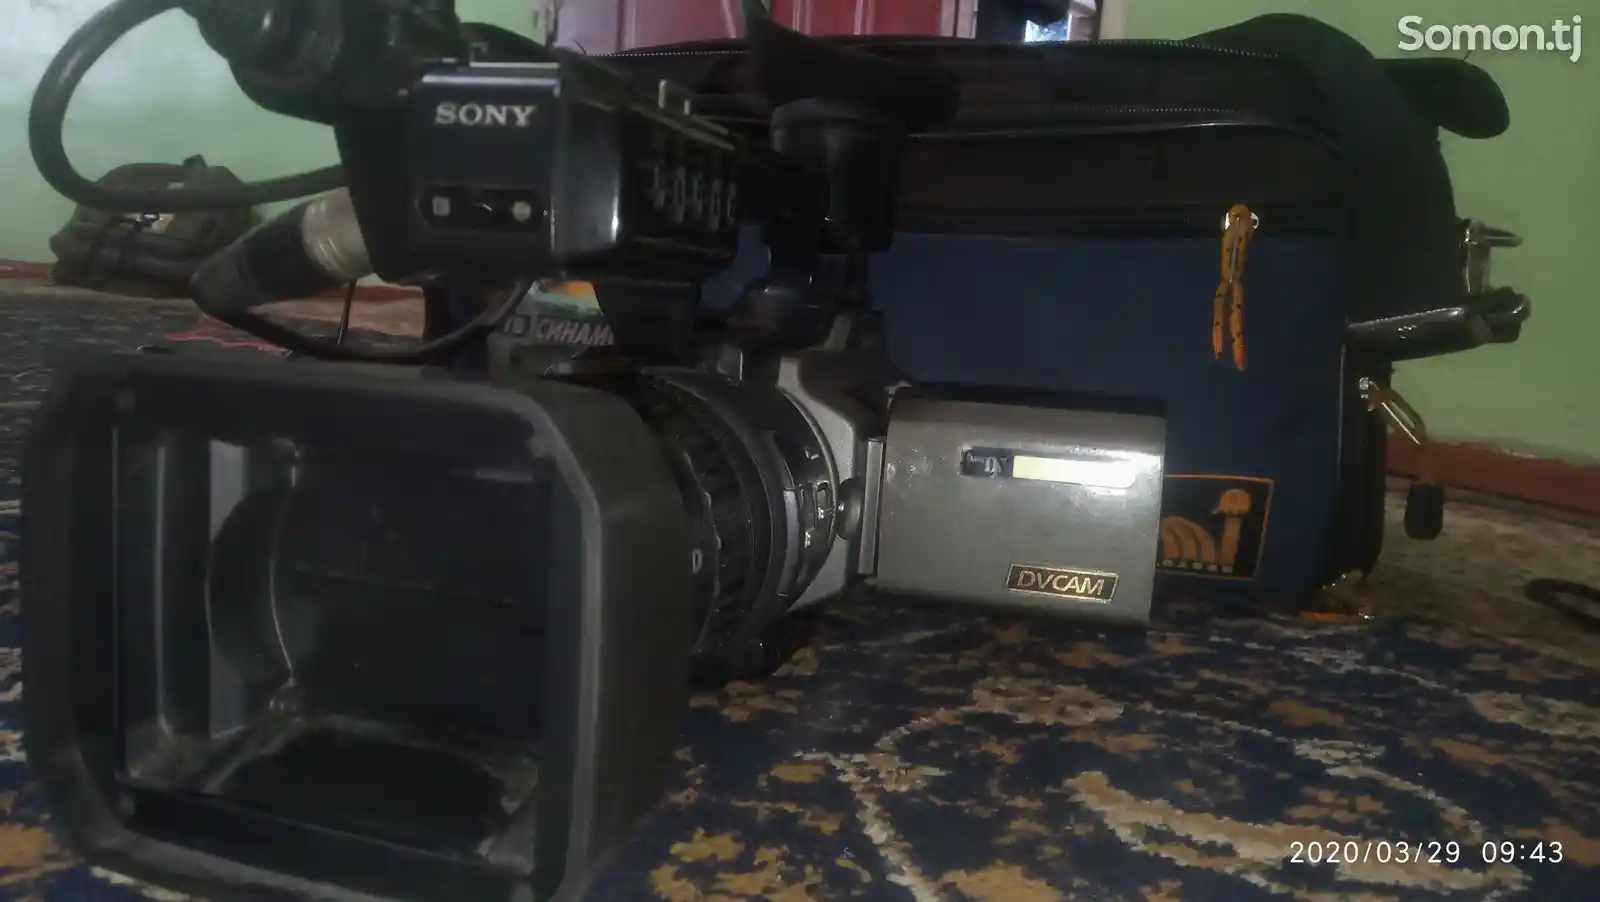 Видеокамера Sony DV-cam 170-1